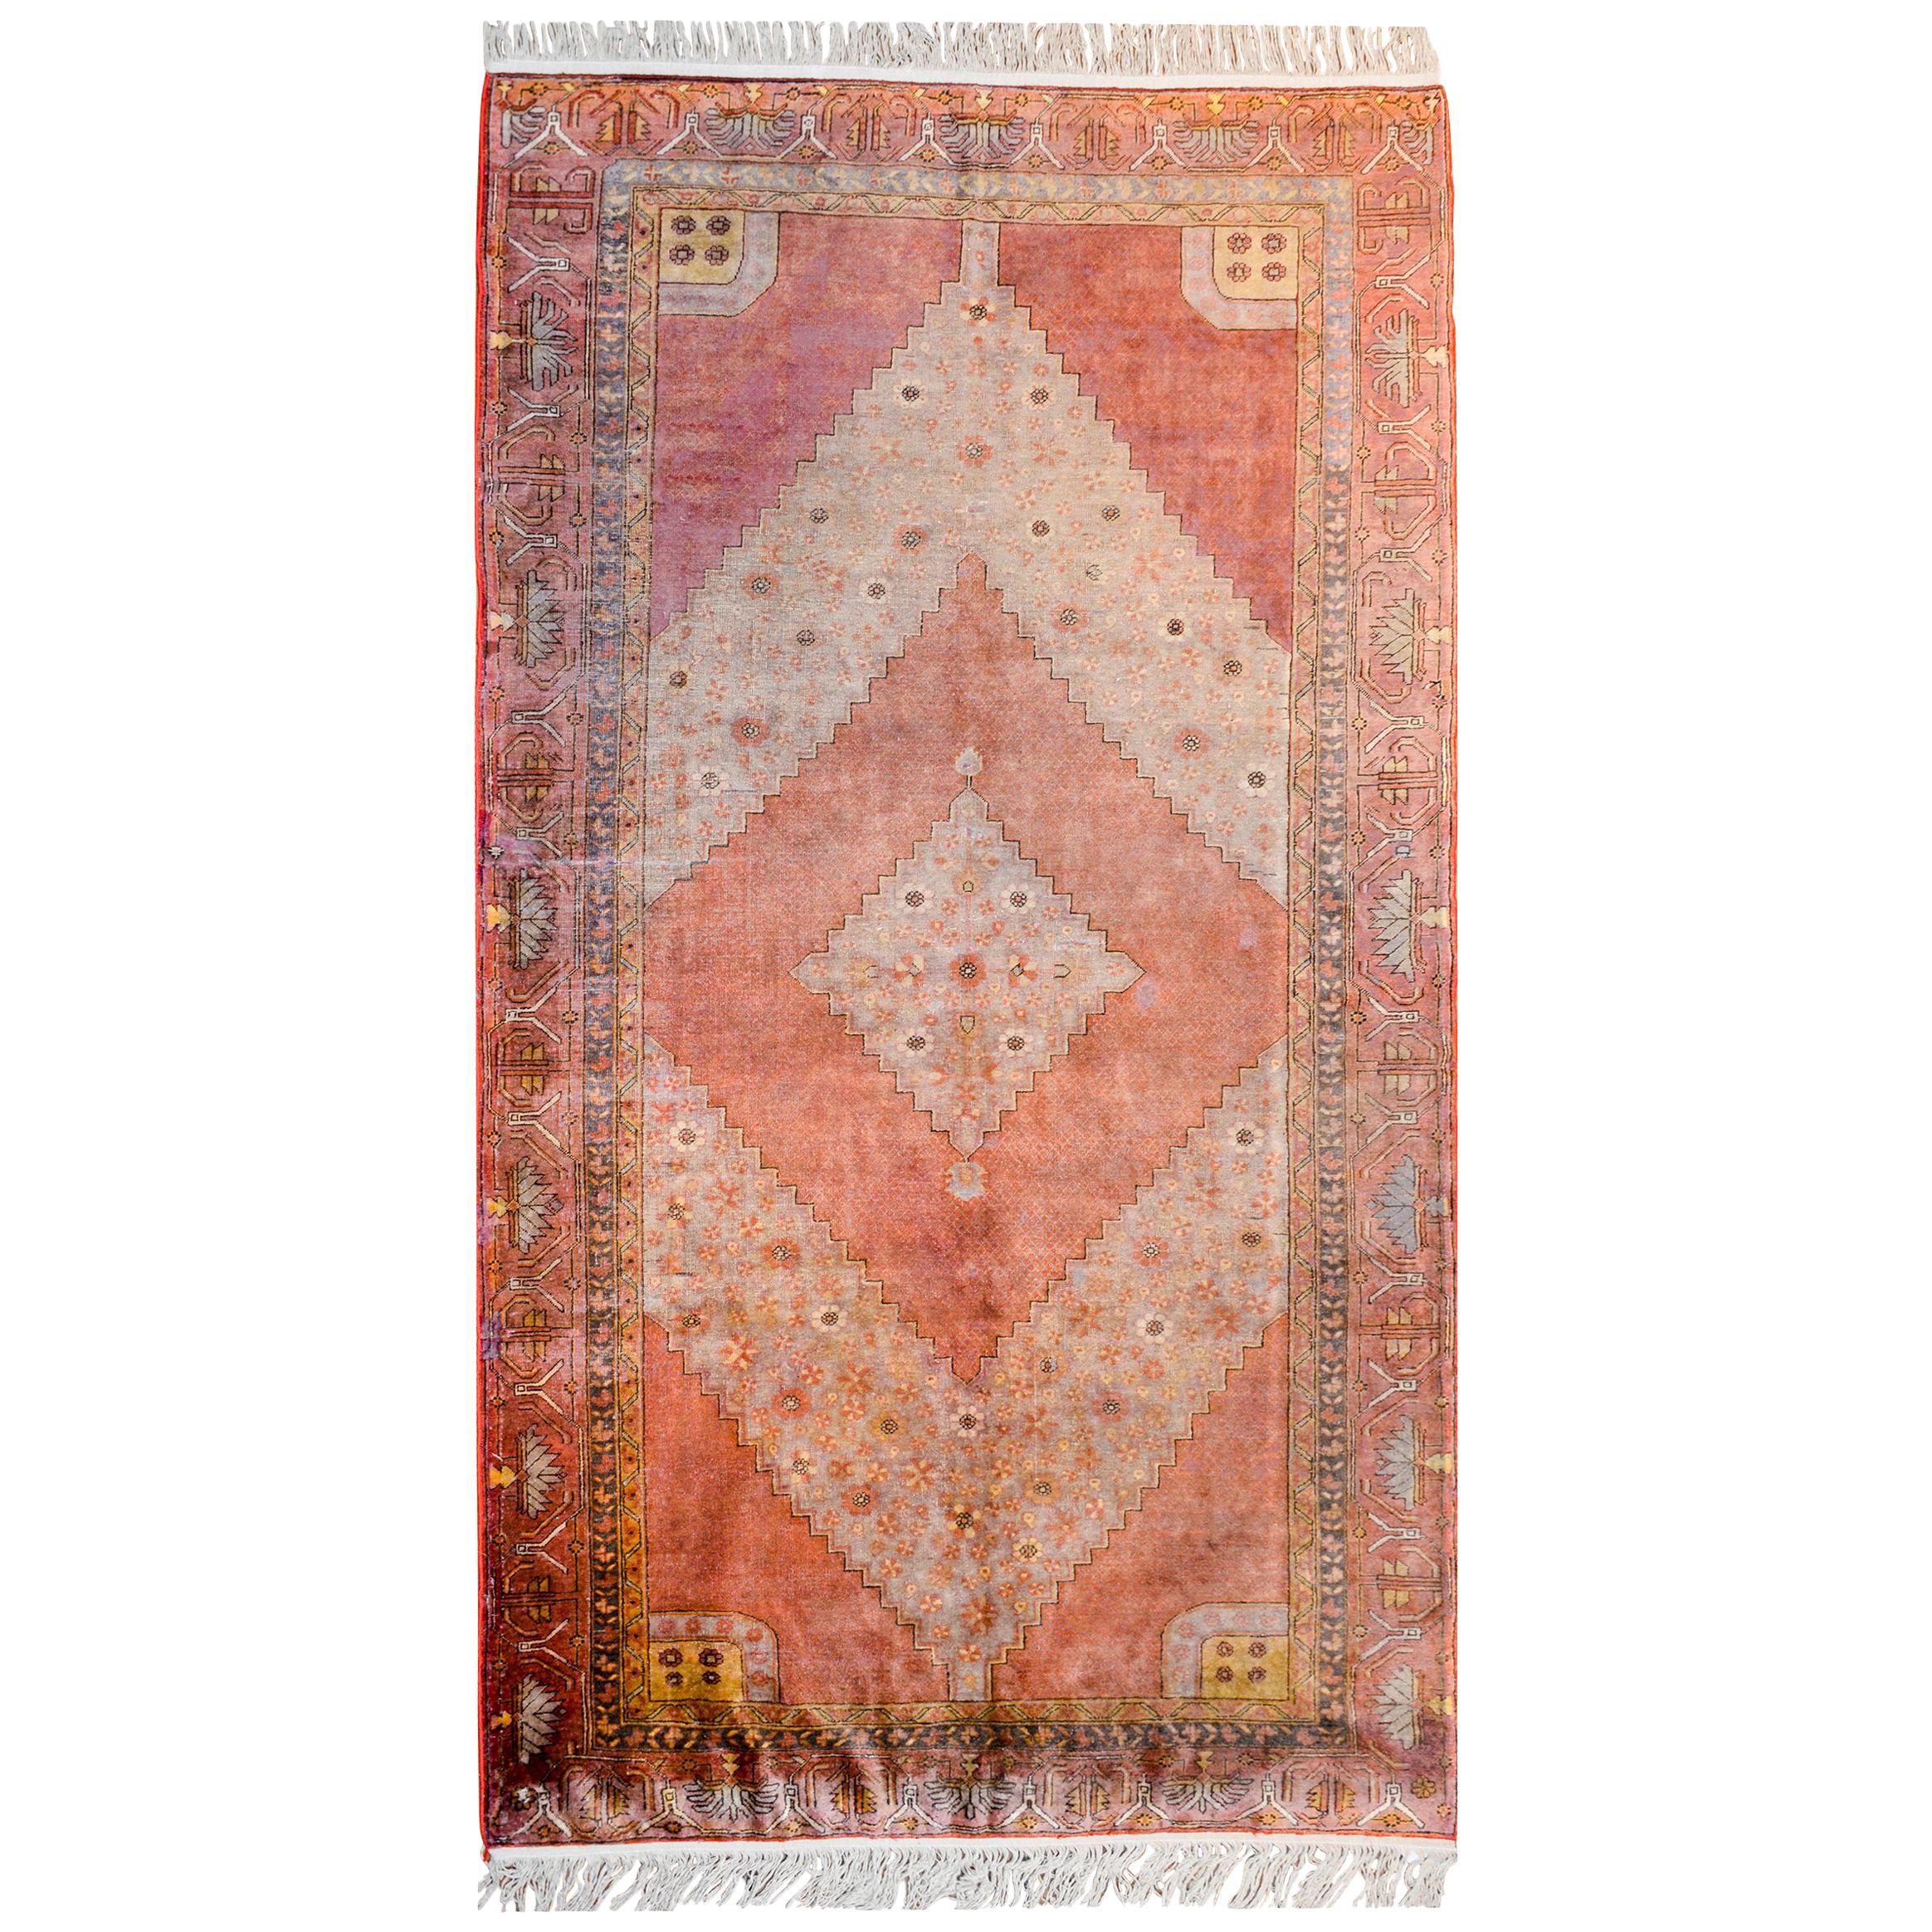 Unglaublicher Samarghand-Teppich aus dem frühen 20. Jahrhundert